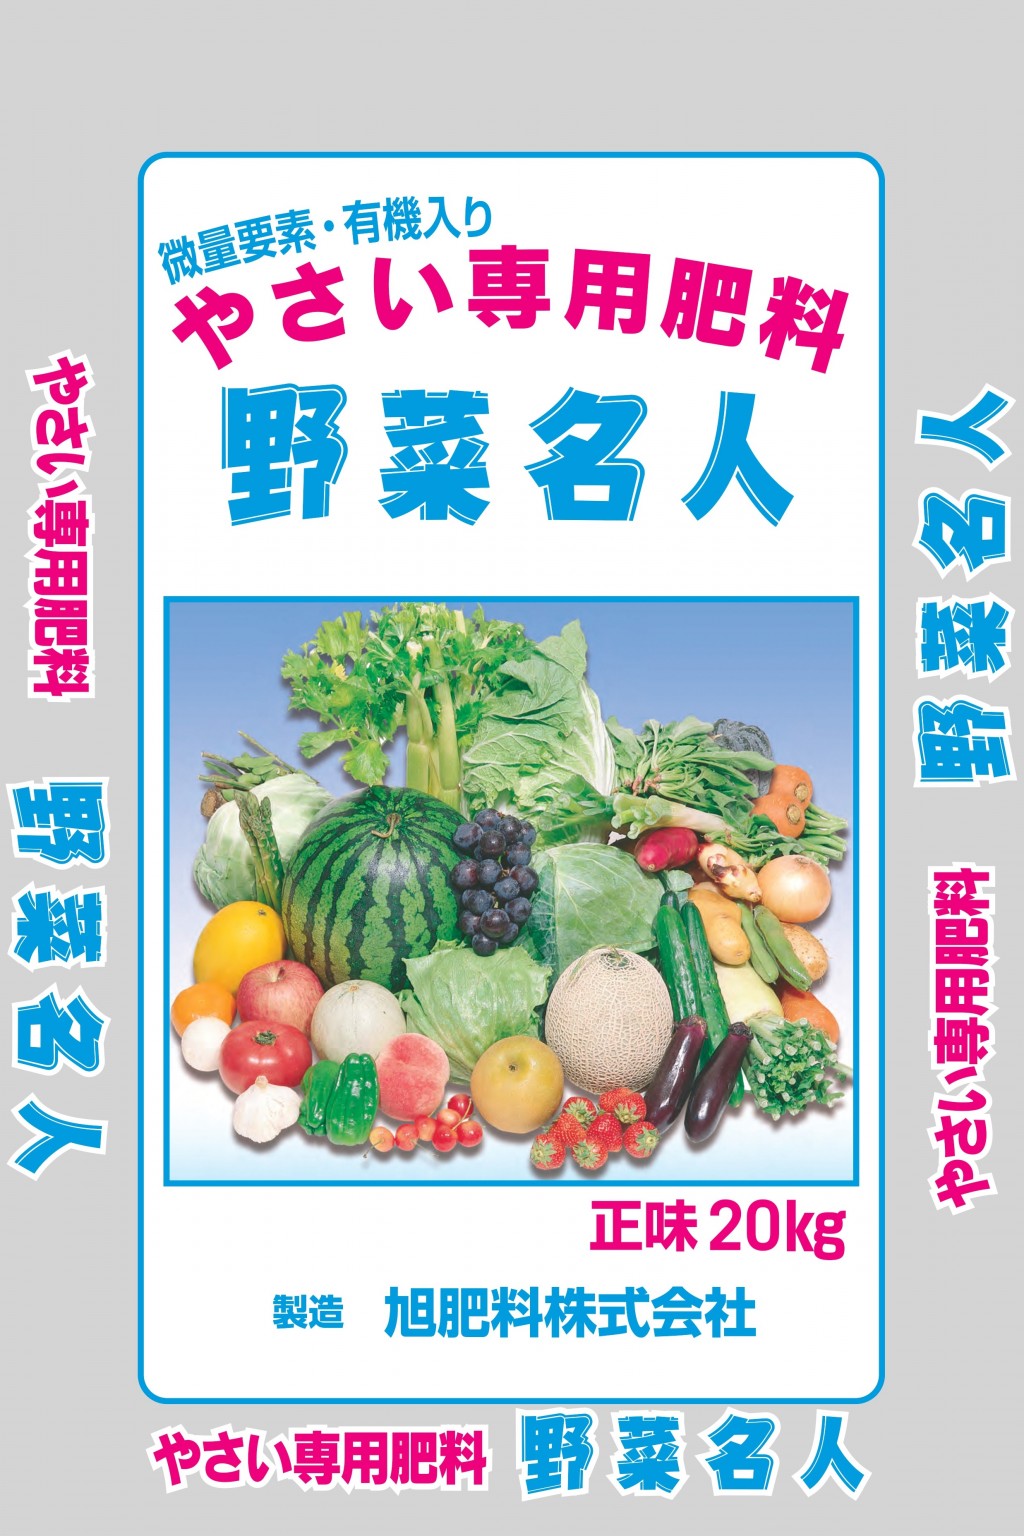 あかぎ園芸 粒状 果樹5号 (チッソ7・リン酸7・カリ6) 5kg×4袋